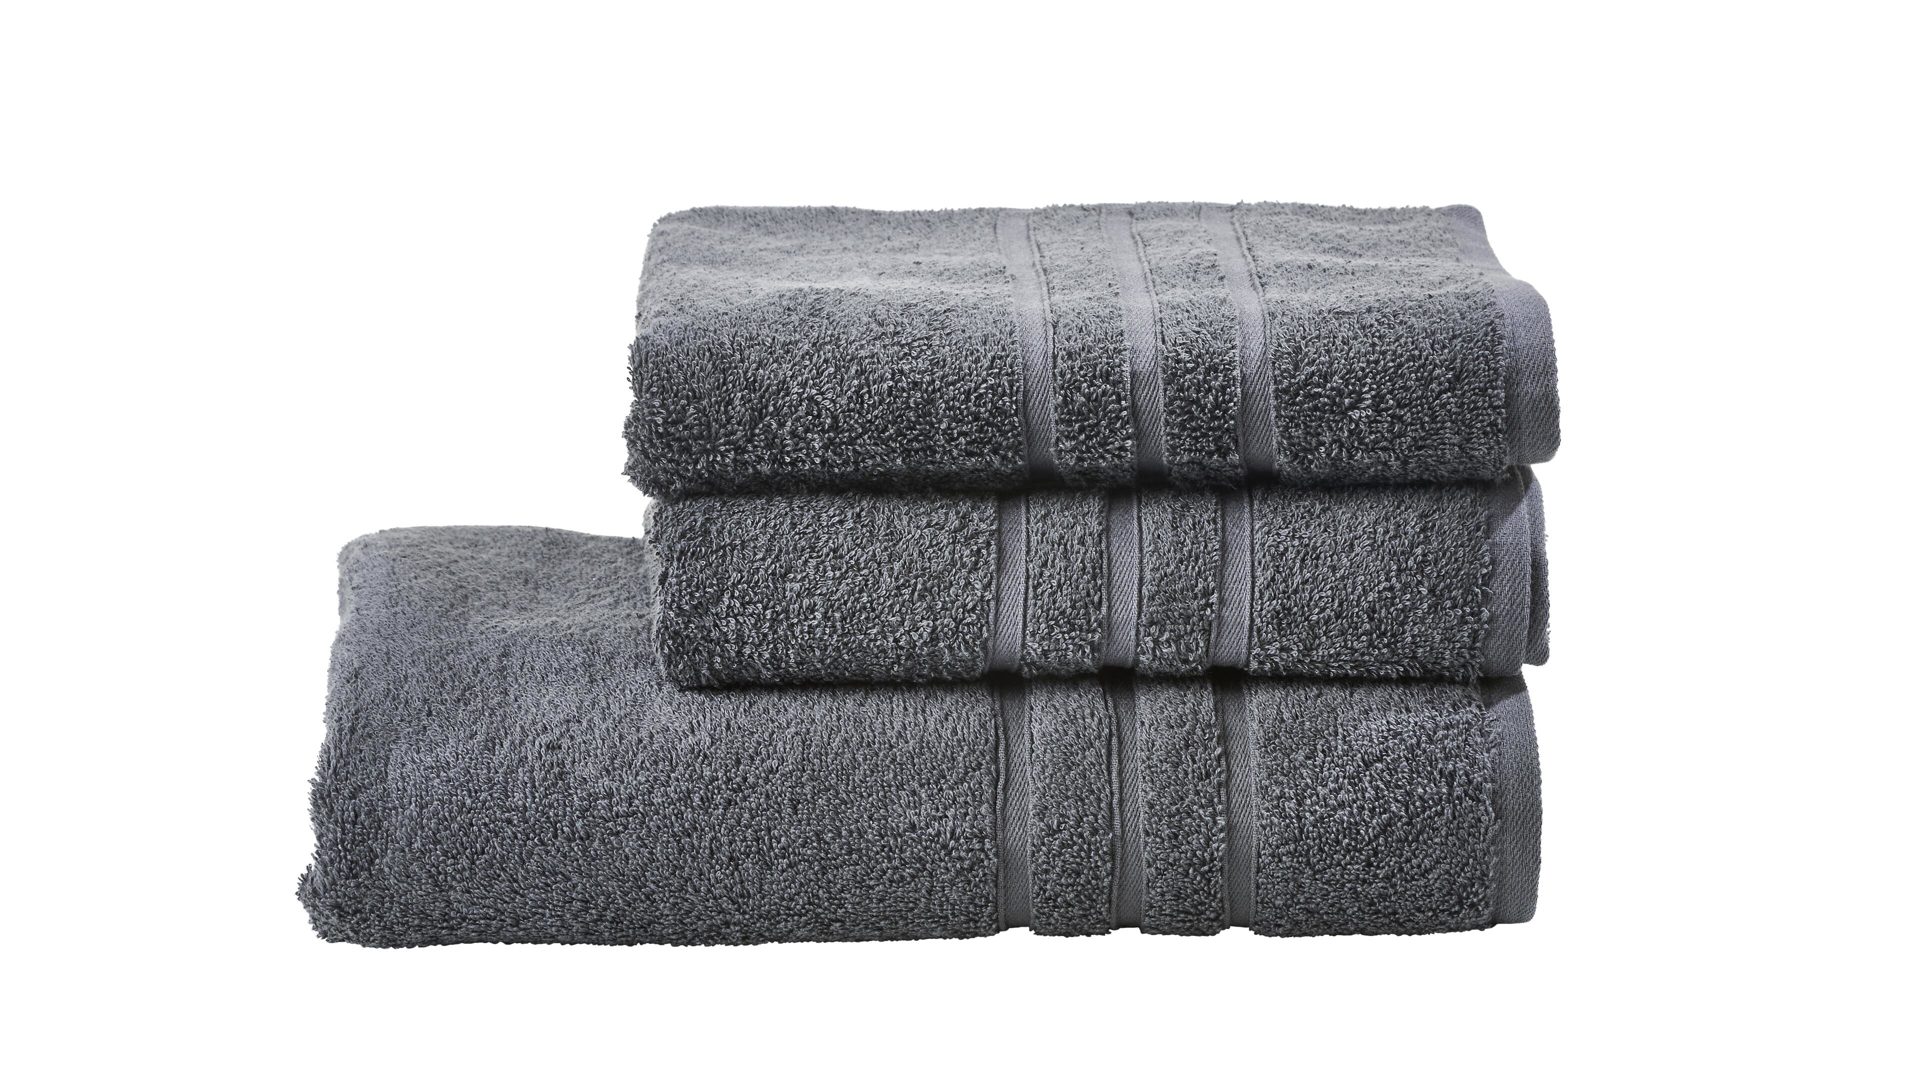 Handtuch-Set Done.® aus Stoff in Anthrazit done.® Handtuch-Set Daily Uni anthrazitfarbene Baumwolle – dreiteilig